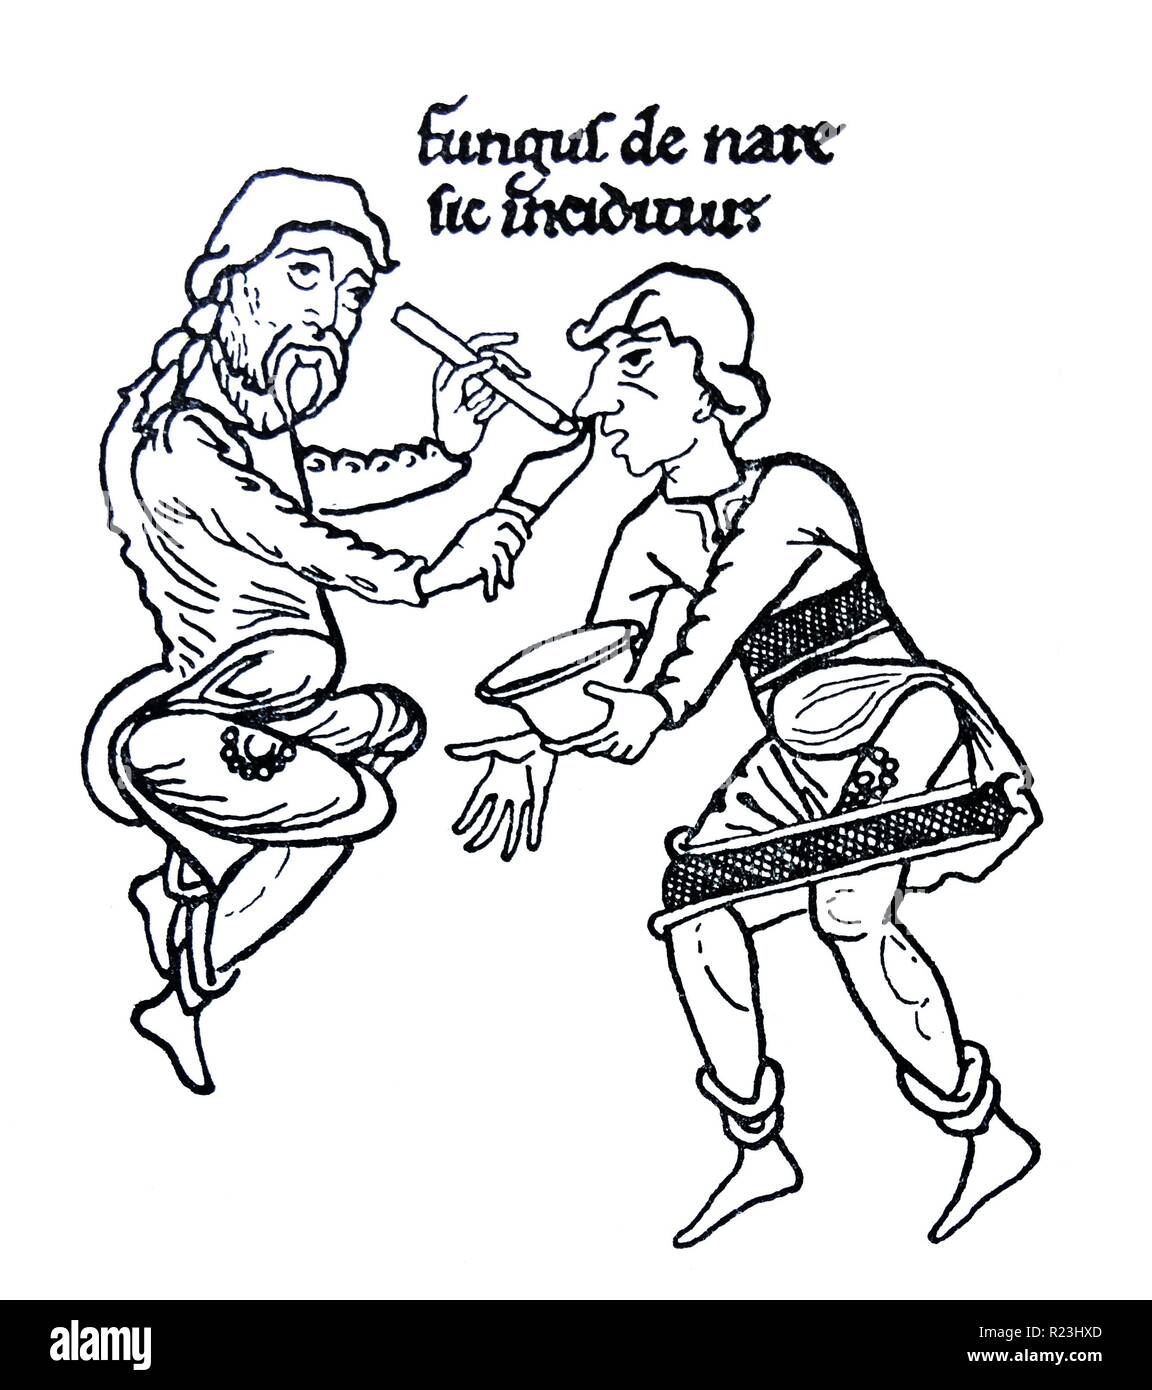 Dibujo de la medieval de tratamiento nasal de la aflicción. El texto anterior es "hongo de nase sic inciditur', lo que se traduce a "pólipo es cortada de la nariz". Fecha del siglo XII. Foto de stock